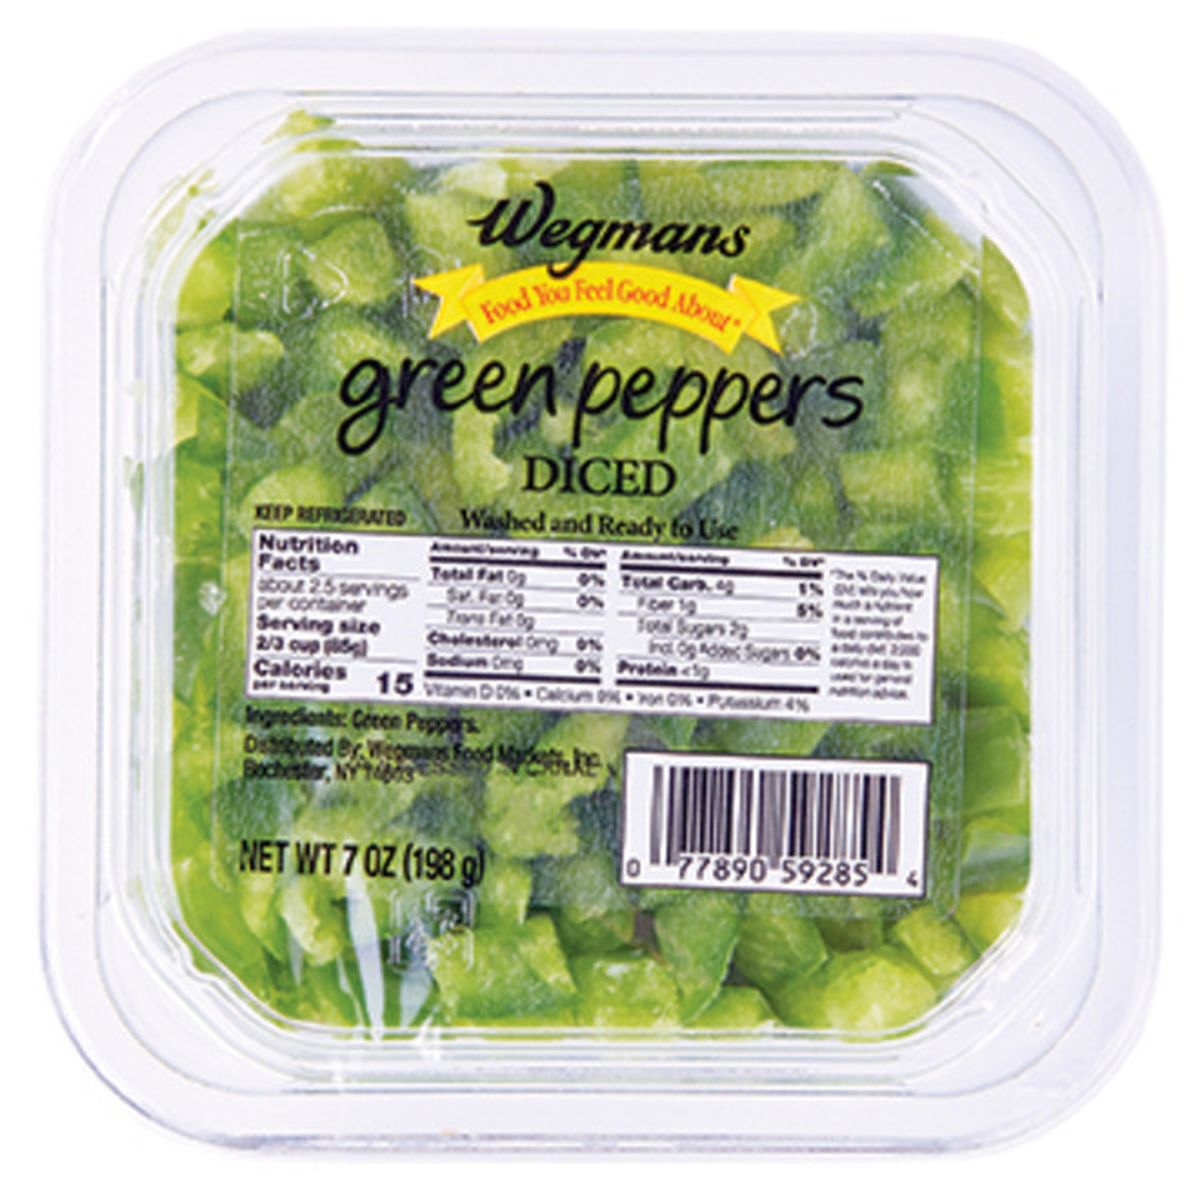 Calories in Wegmans Diced Green Peppers